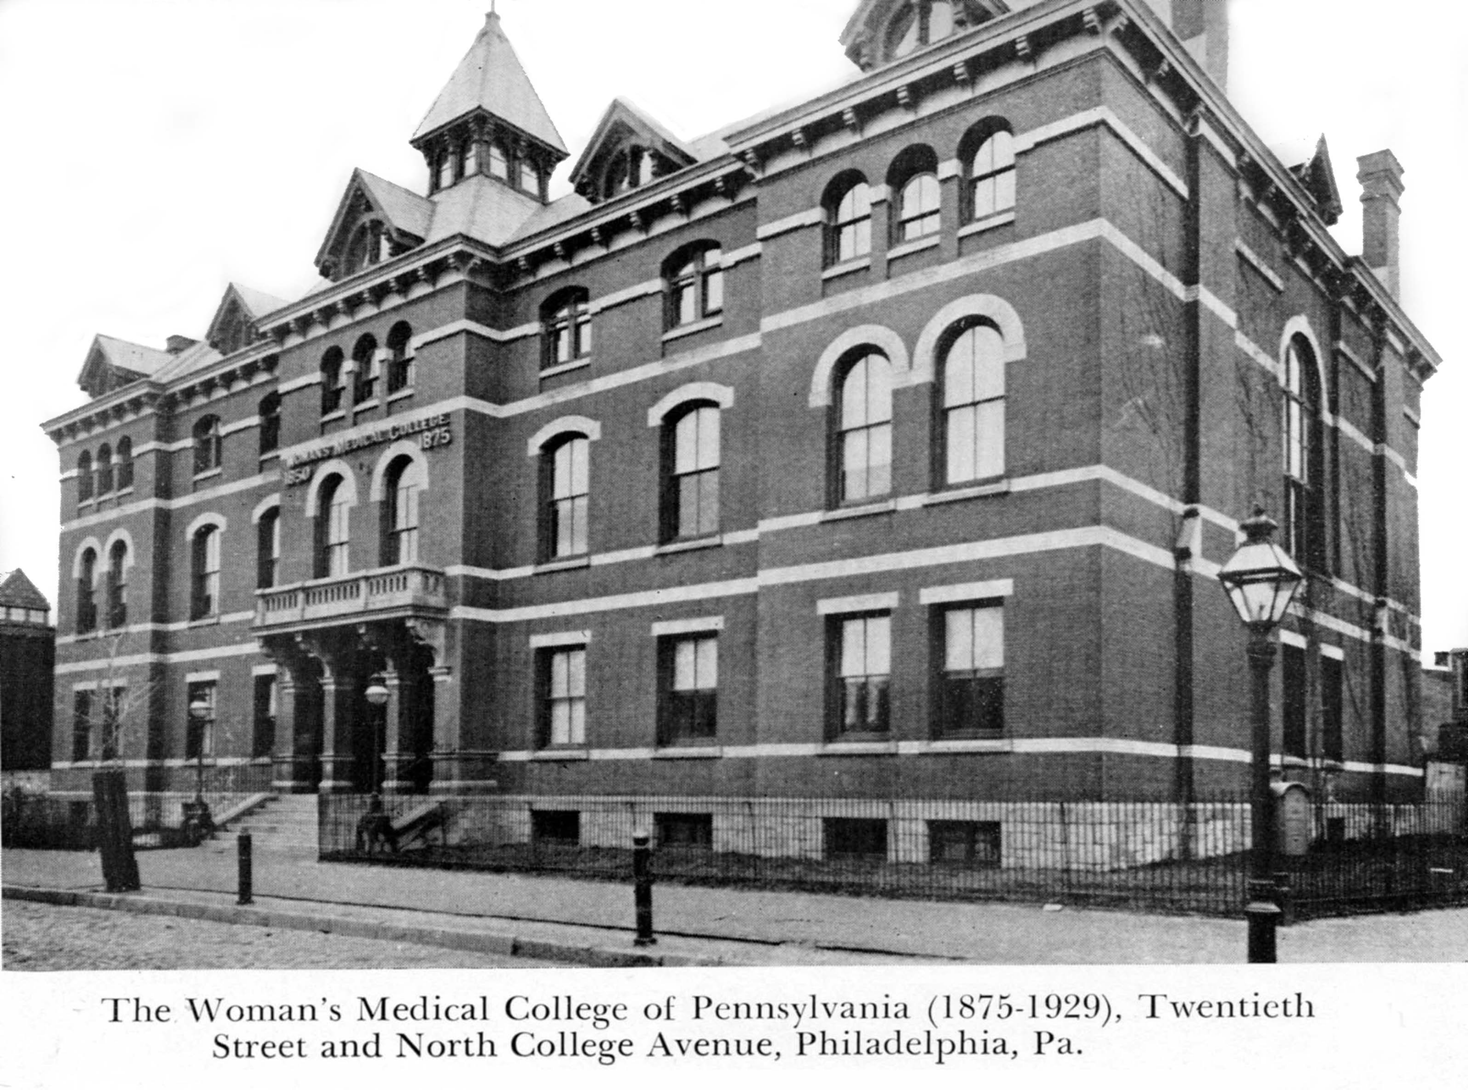 Philadelphia Medical College for Women